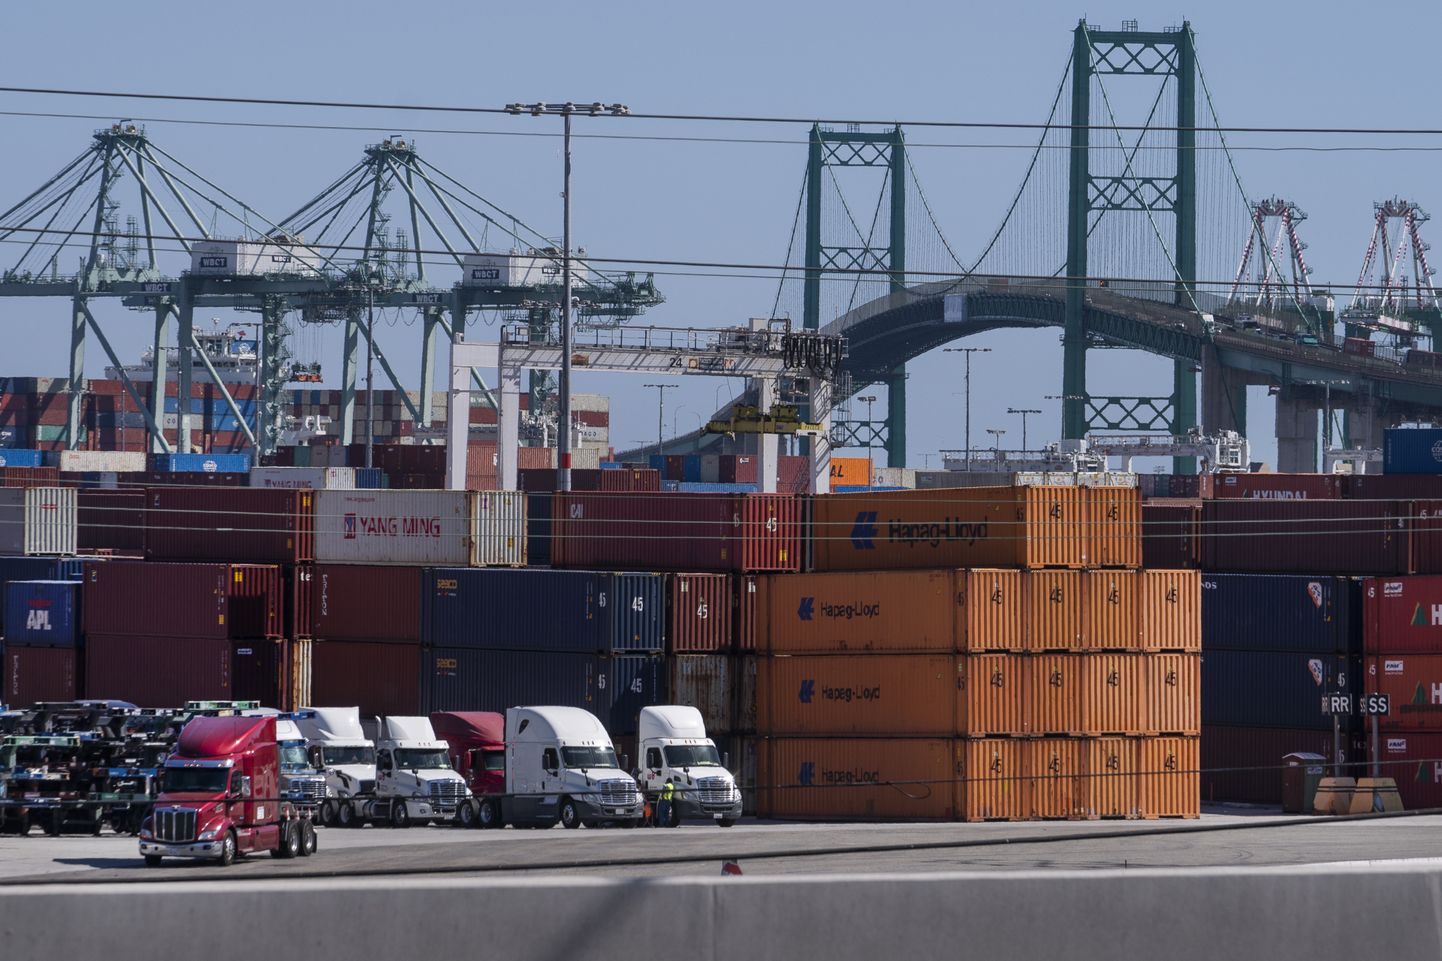 Rekad rivistuvad Los Angeles'i sadamas San Pedros, et vedada ära sinna kuhjunud kaubakonteinereid.